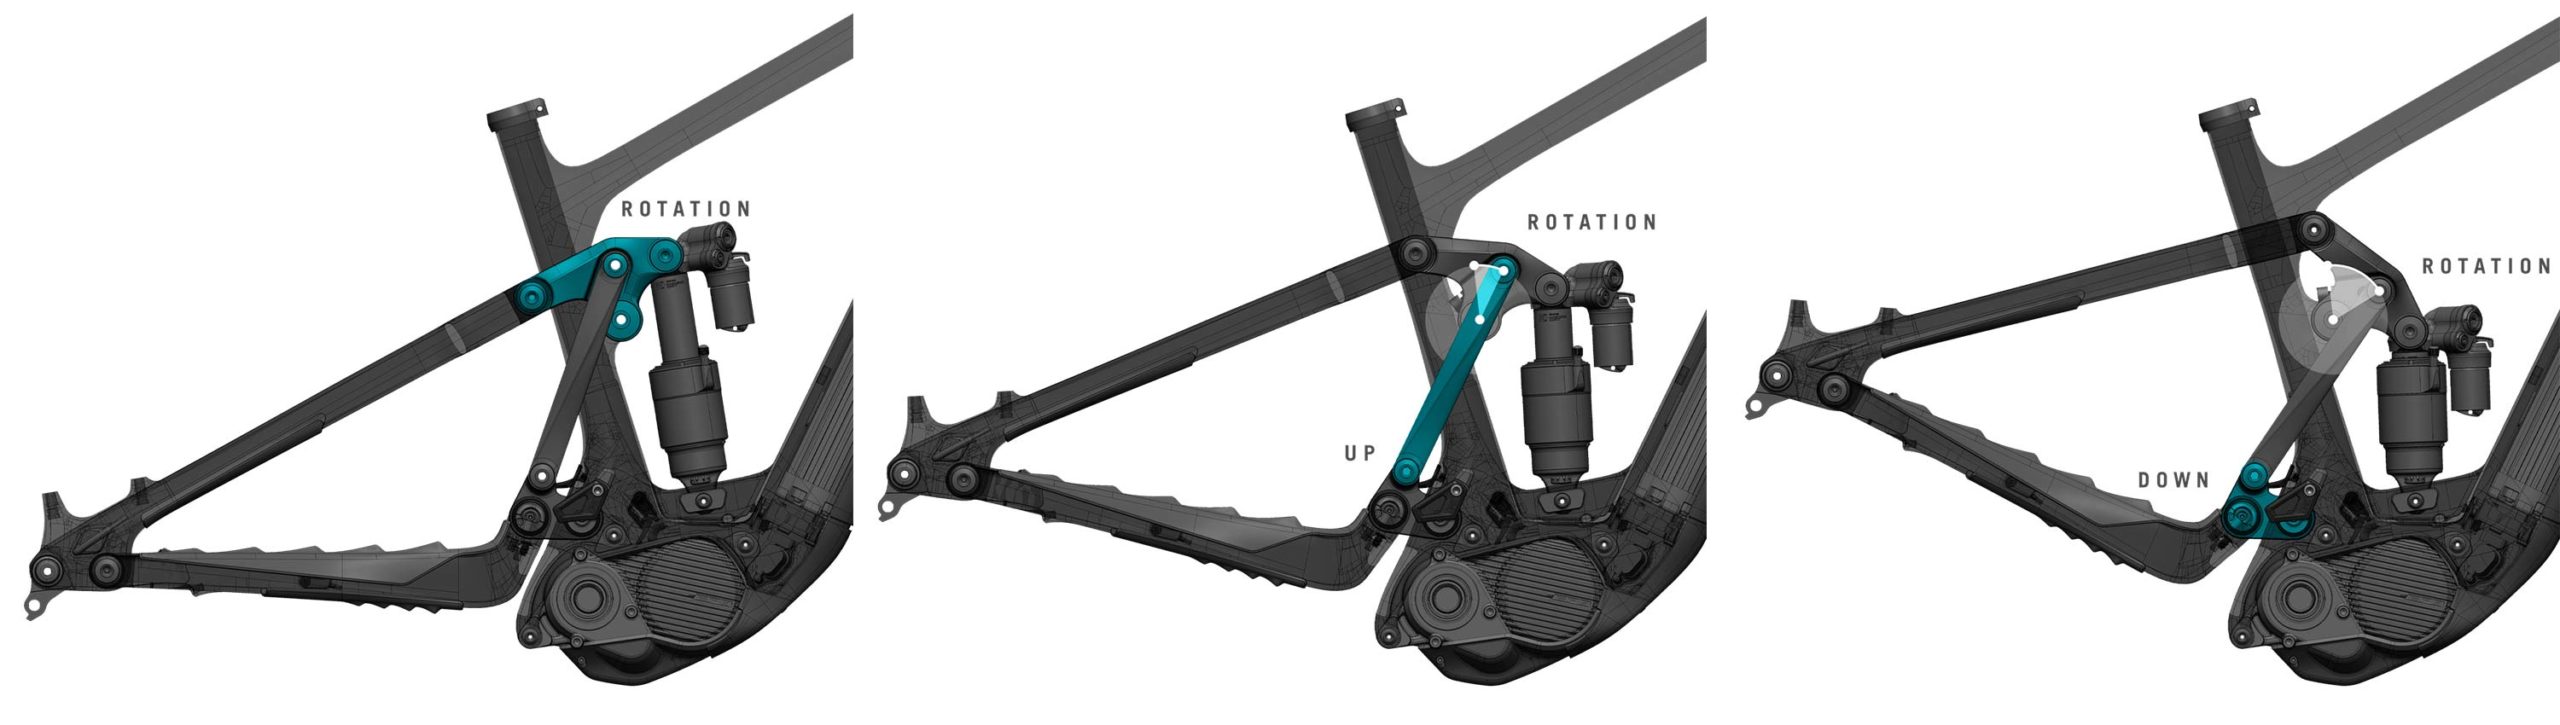 Yeti 160E EWS racing e-bike, all-new 6-bar suspension carbon 160mm eMTB, Sixfinity suspension